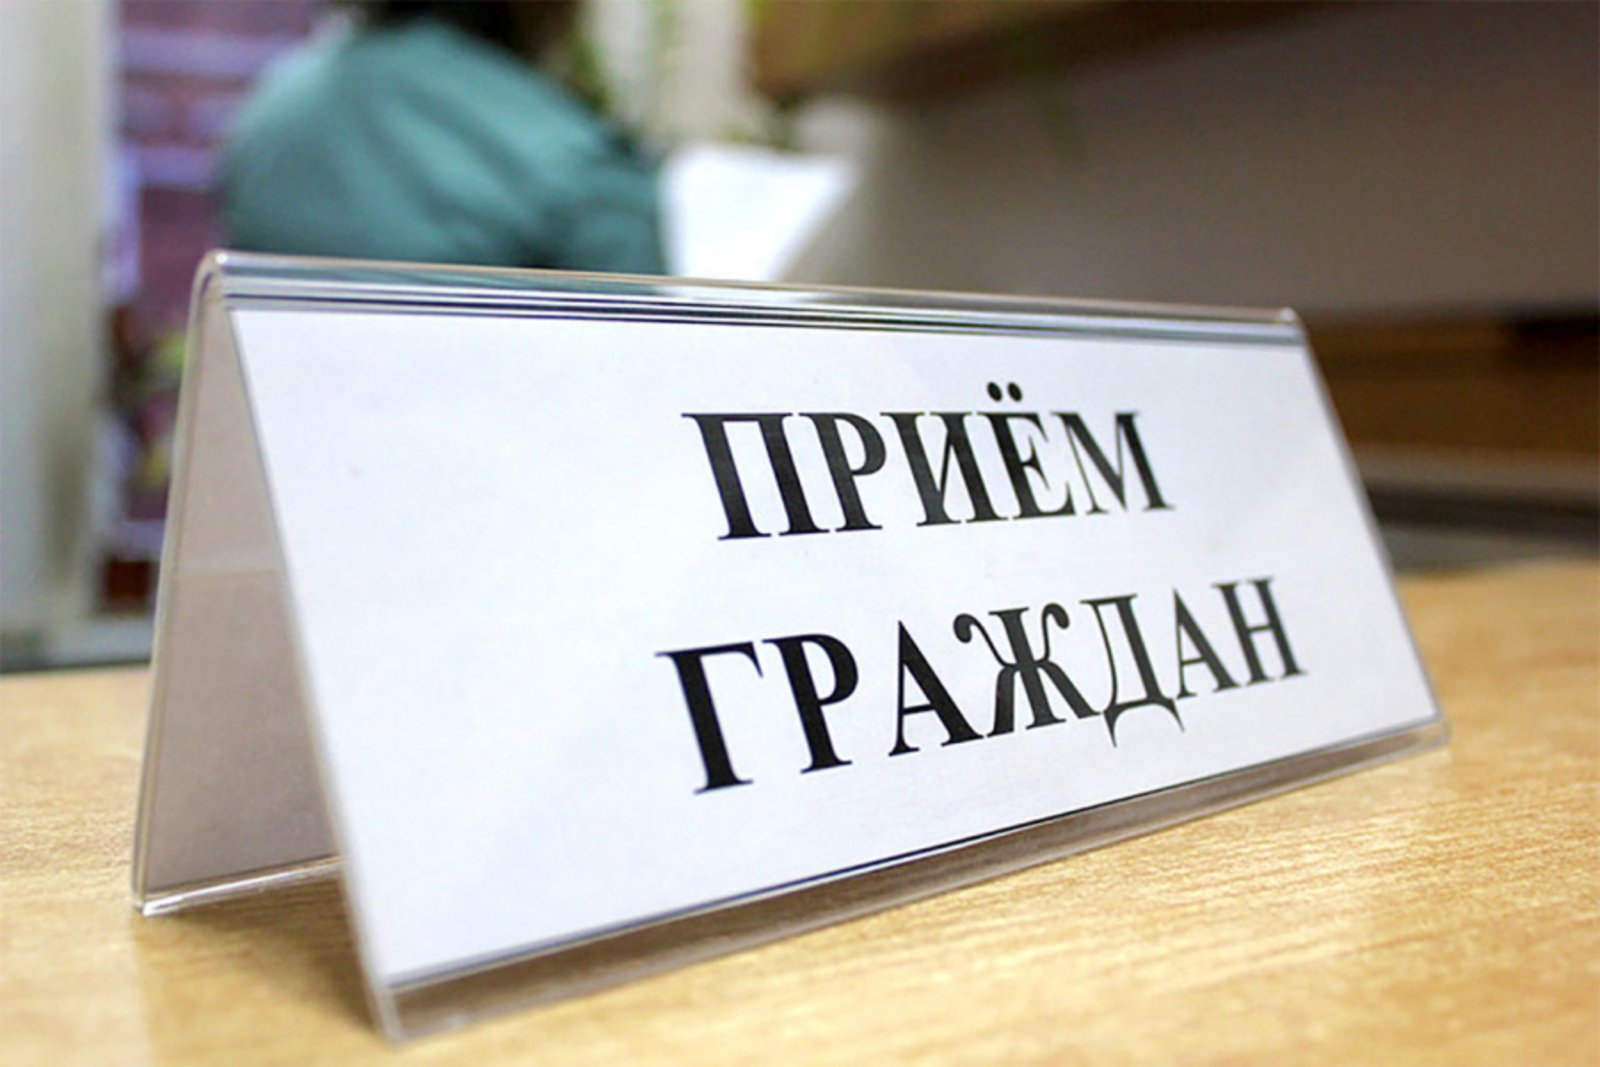 В приёмной Президента Российской Федерации в Республике Башкортостан пройдет личный прием граждан